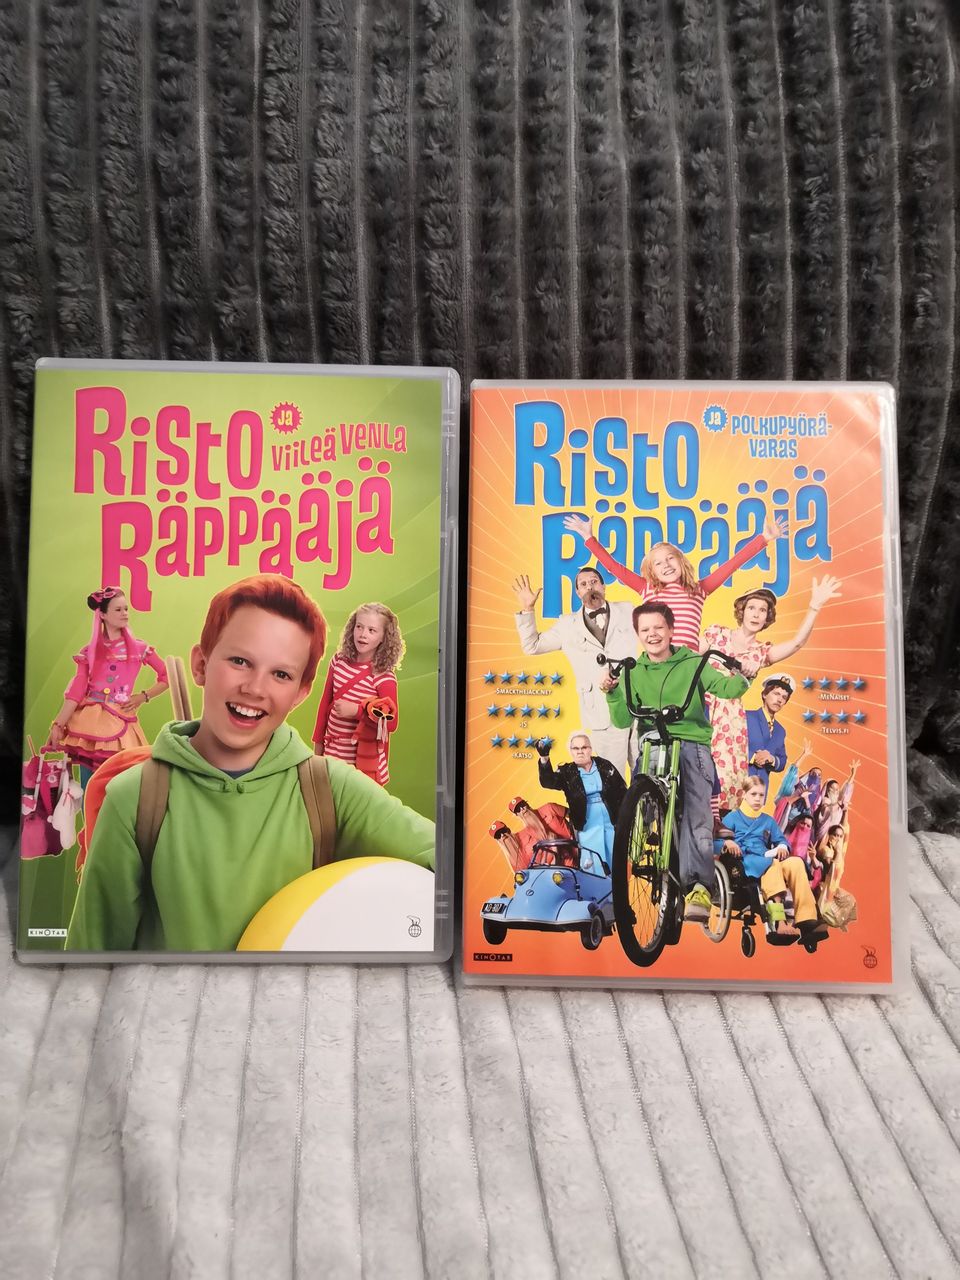 Risto Räppääjä dvd:t